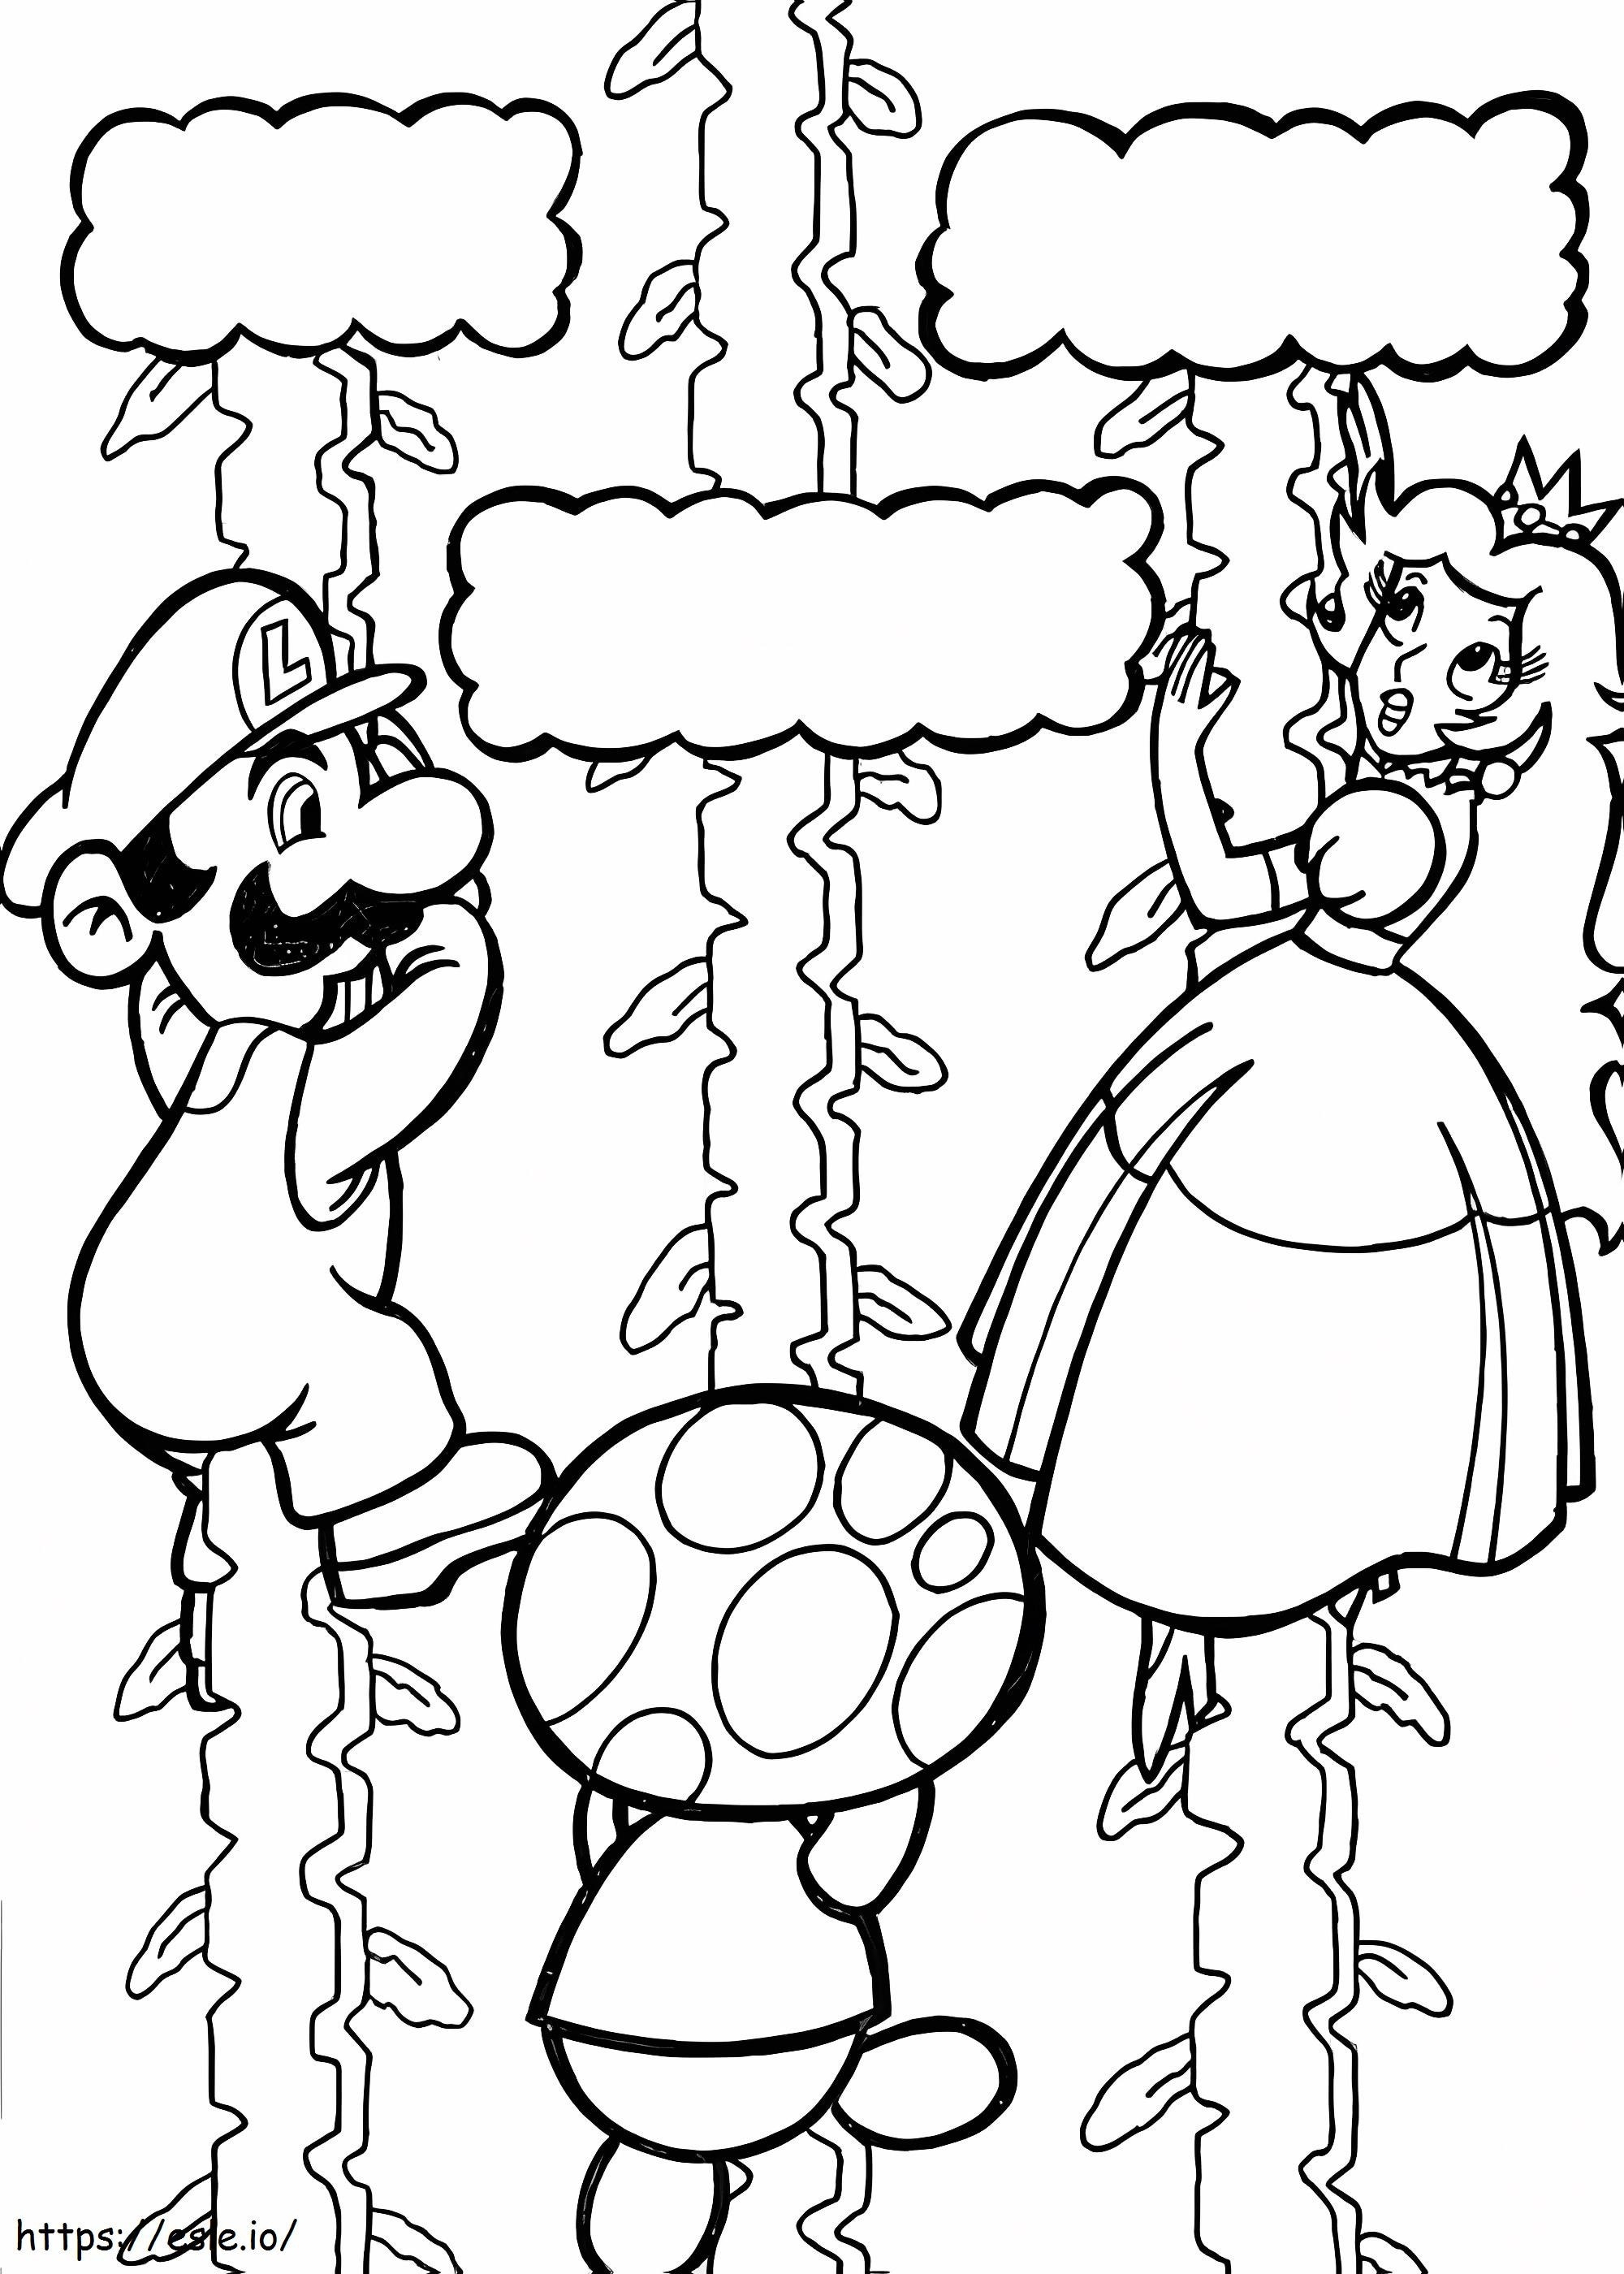 Mario salva la principessa da colorare